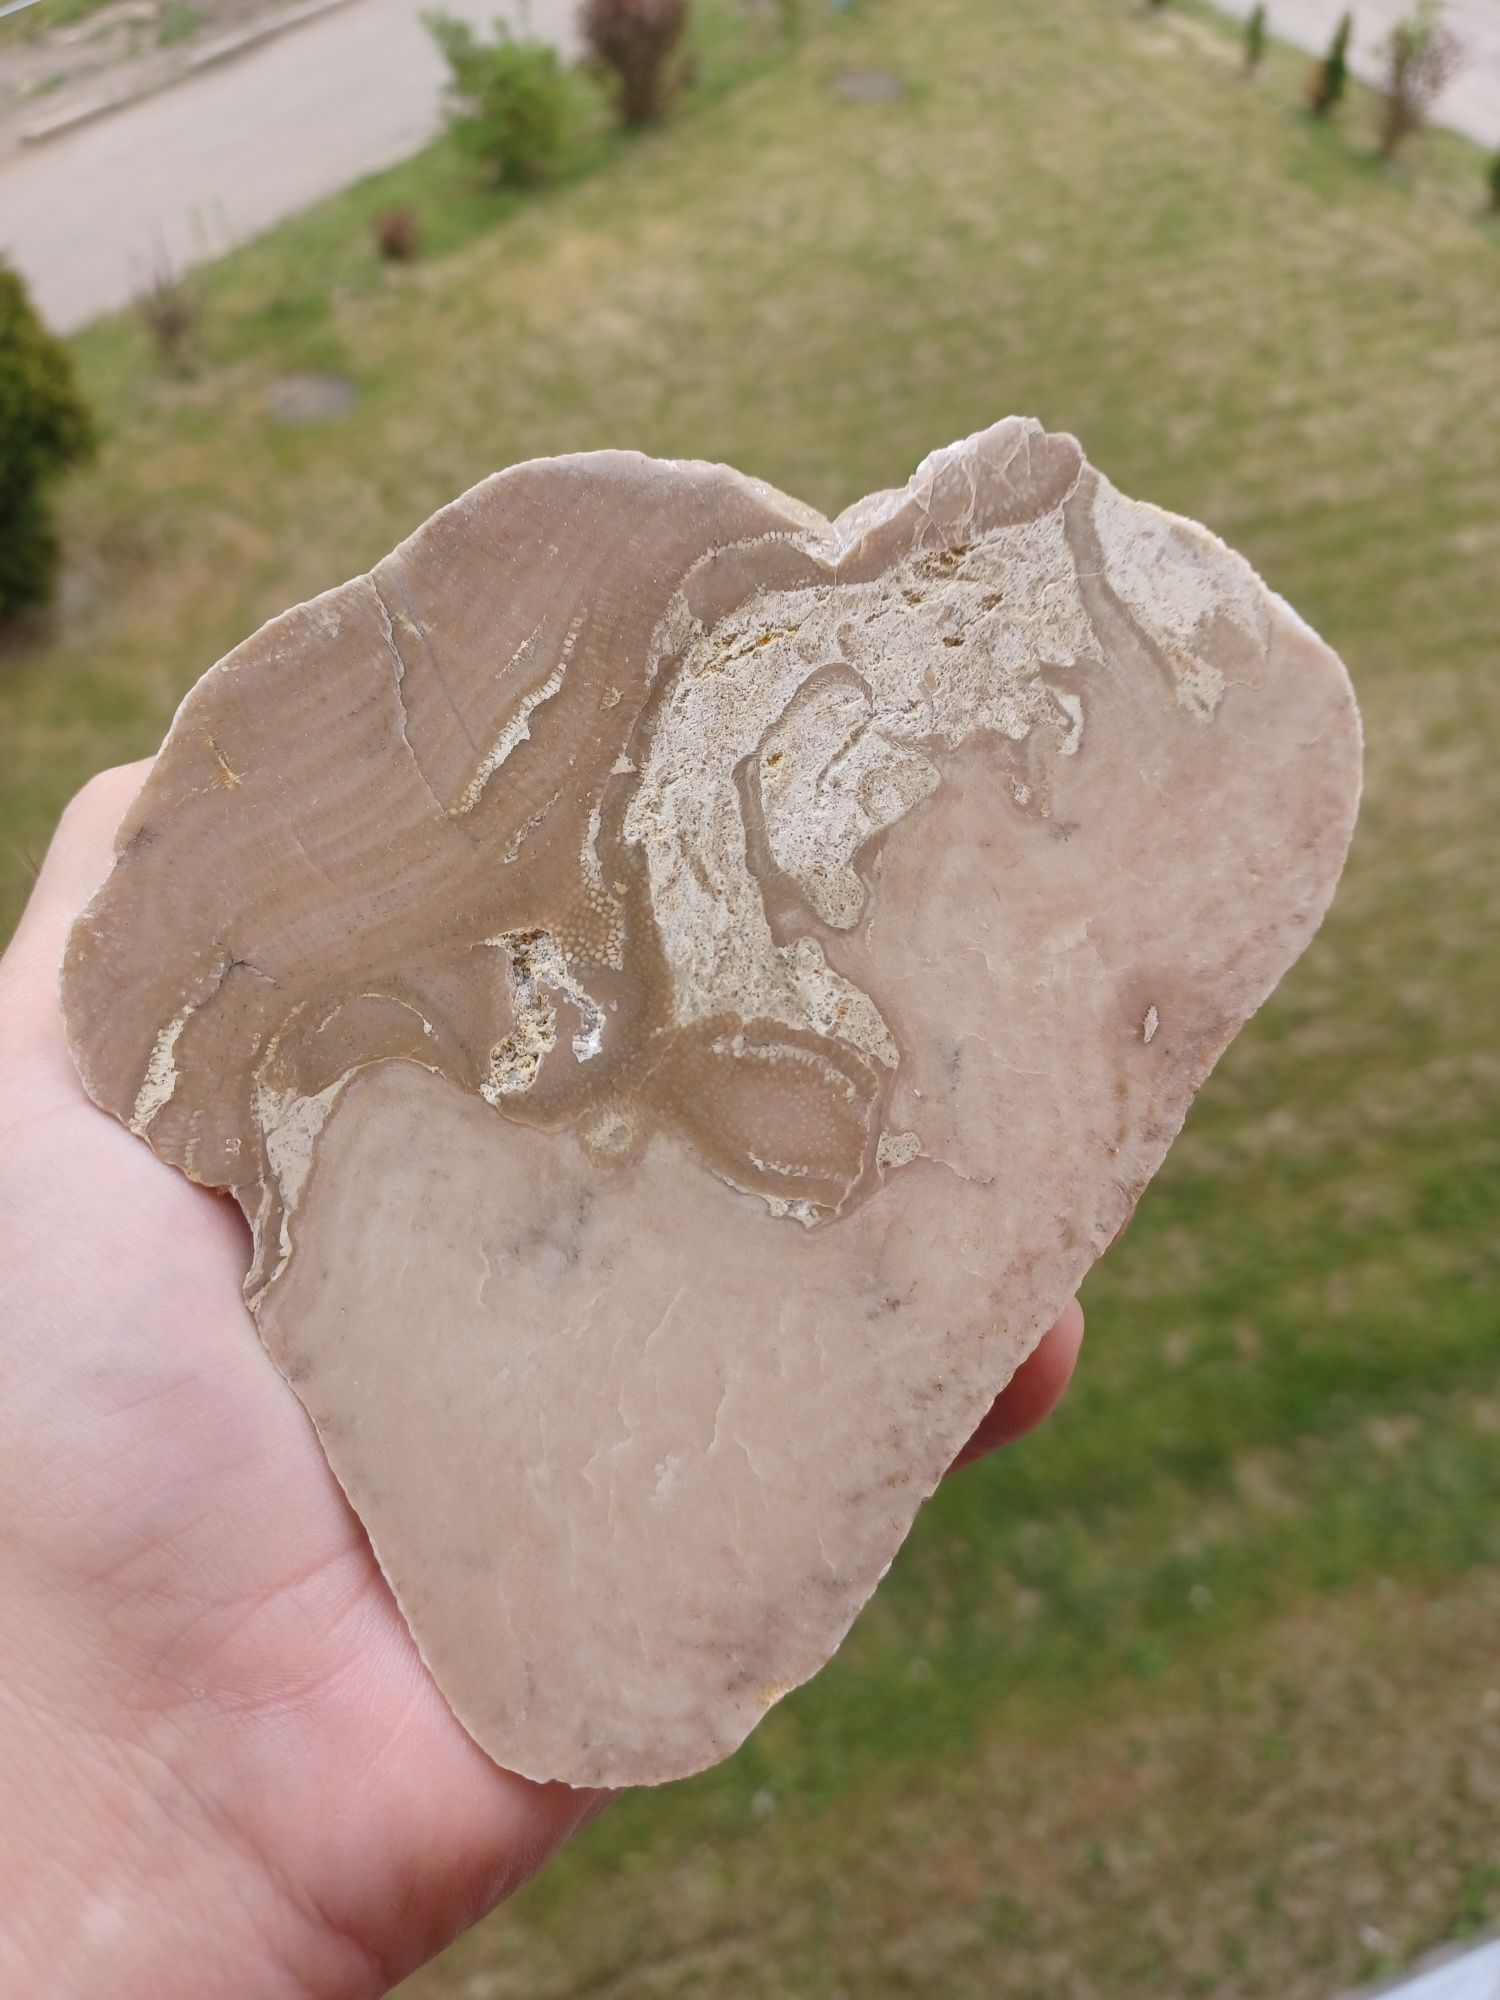 Skamieniałości skały minerały stromatoporoid (gąbka) z koralowcem